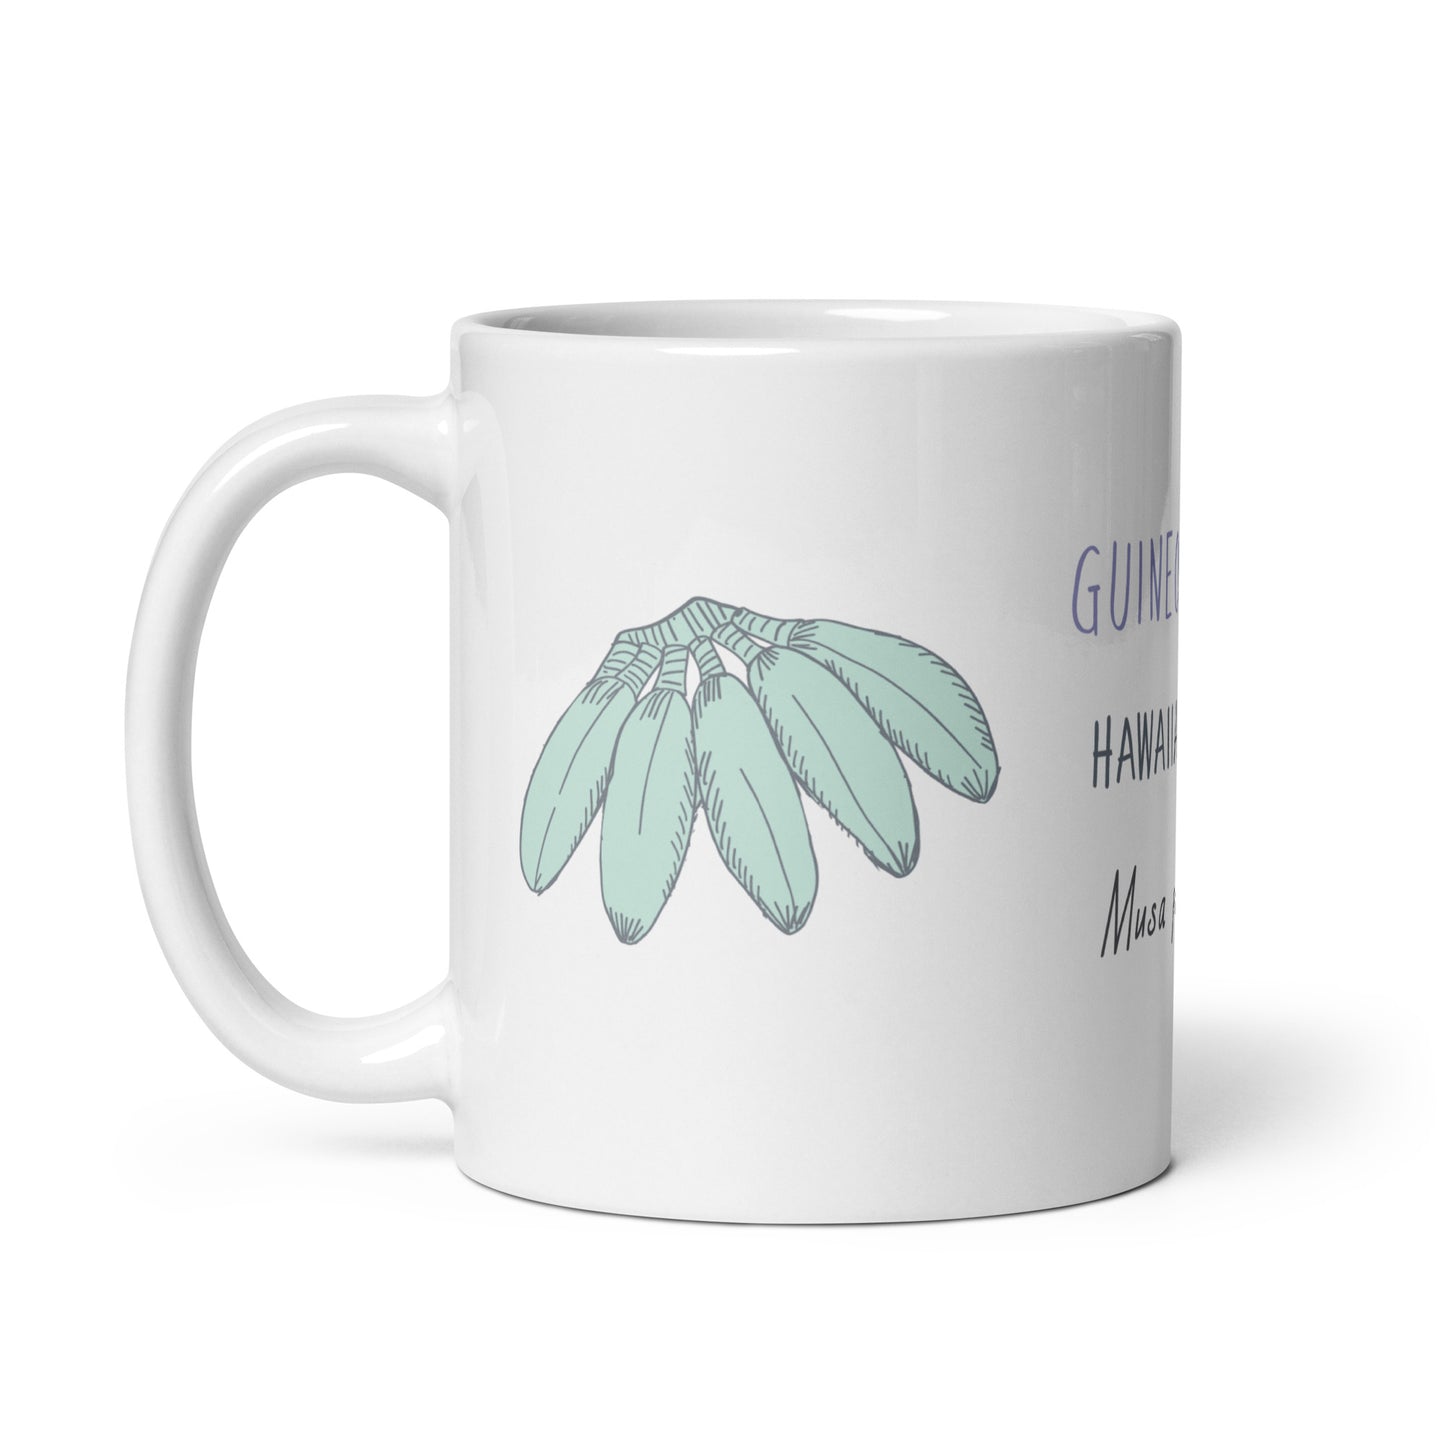 Guineo Mafafo mug